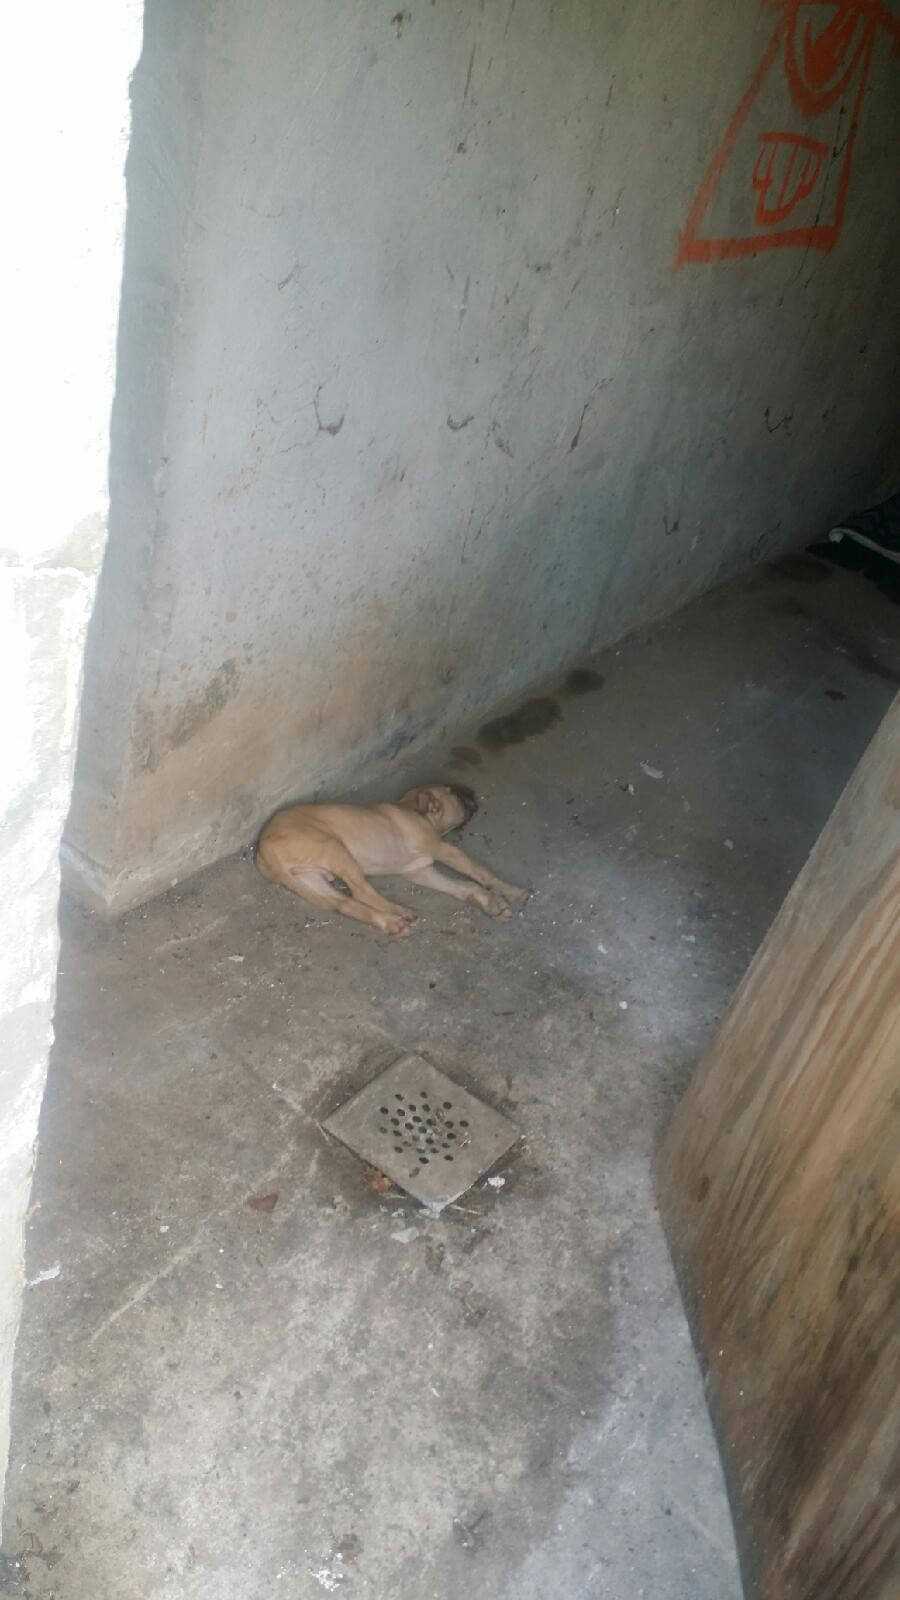 Ten szczeniak umierał na betonowej podłodze. Został porzucony ranny. Bez szans na ratunek.